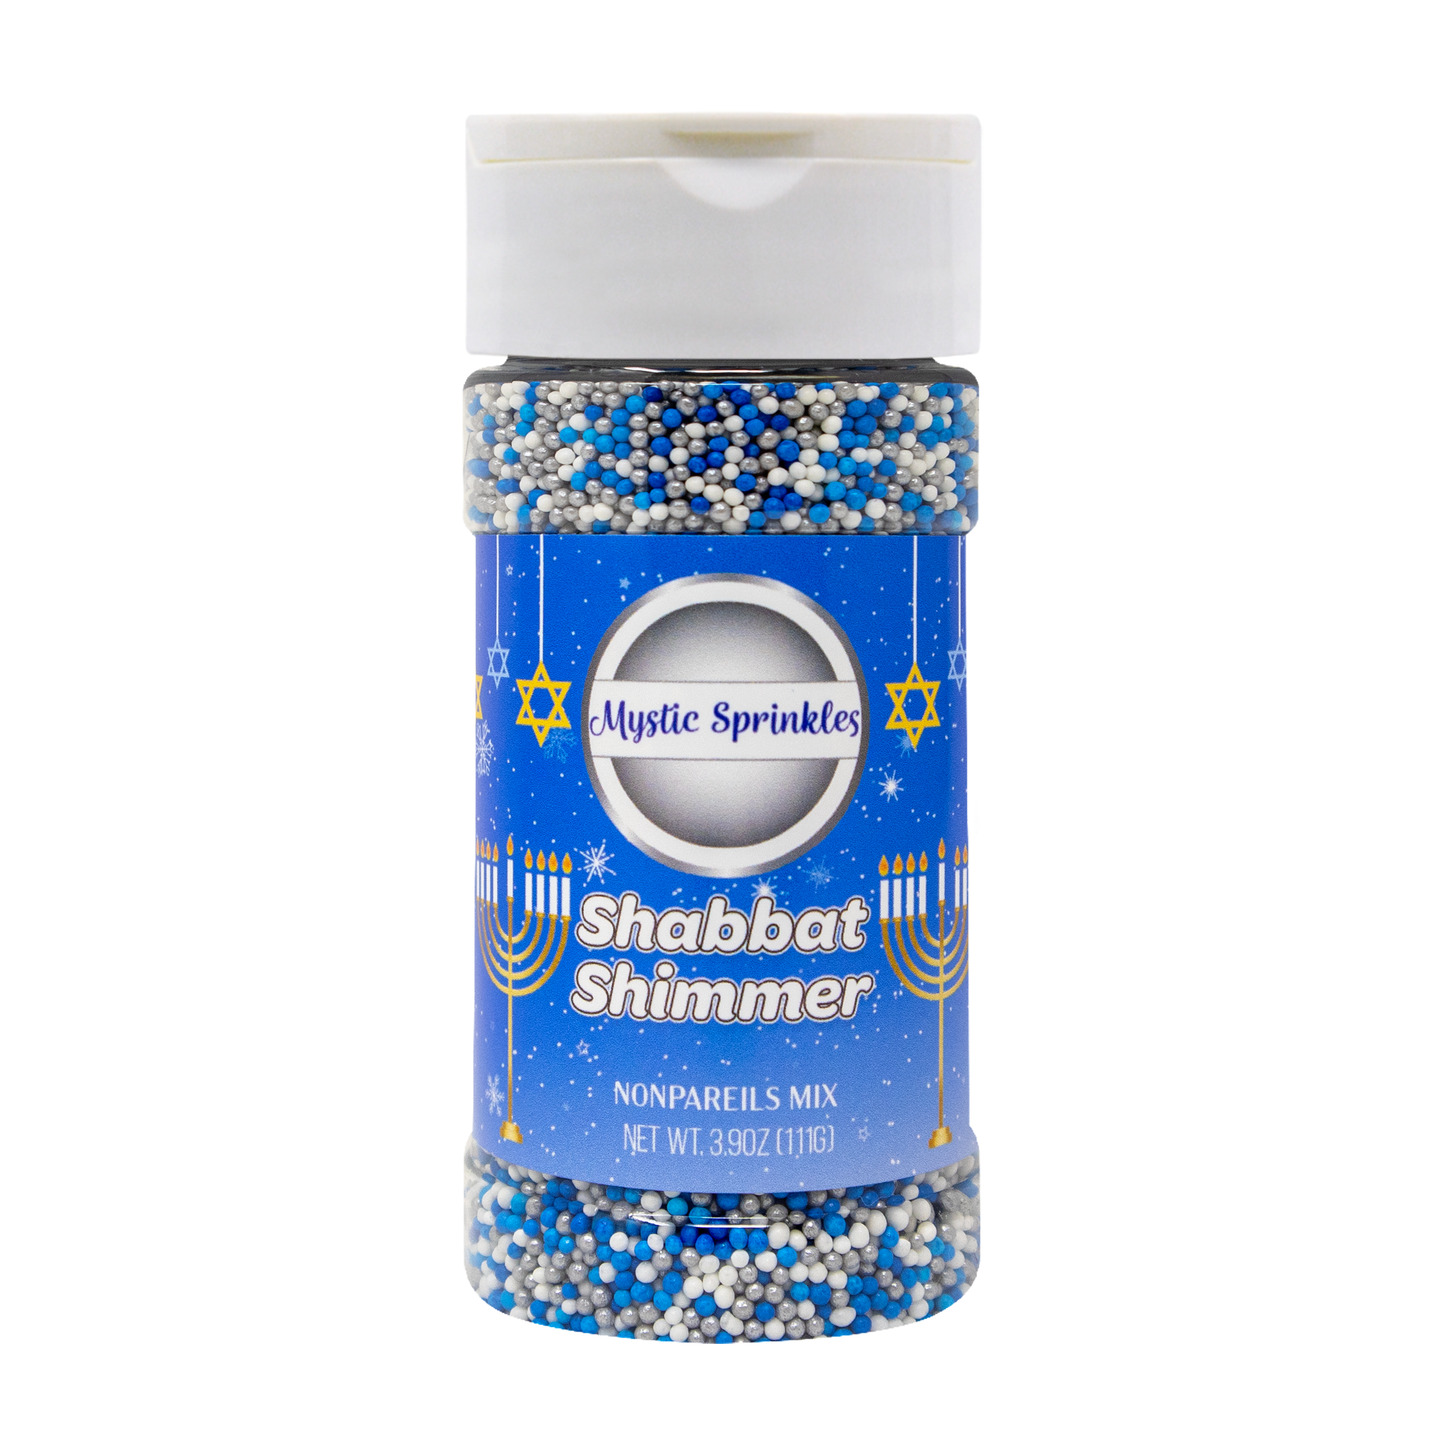 Shabbat Shimmer Nonpareil Mix 3.9oz